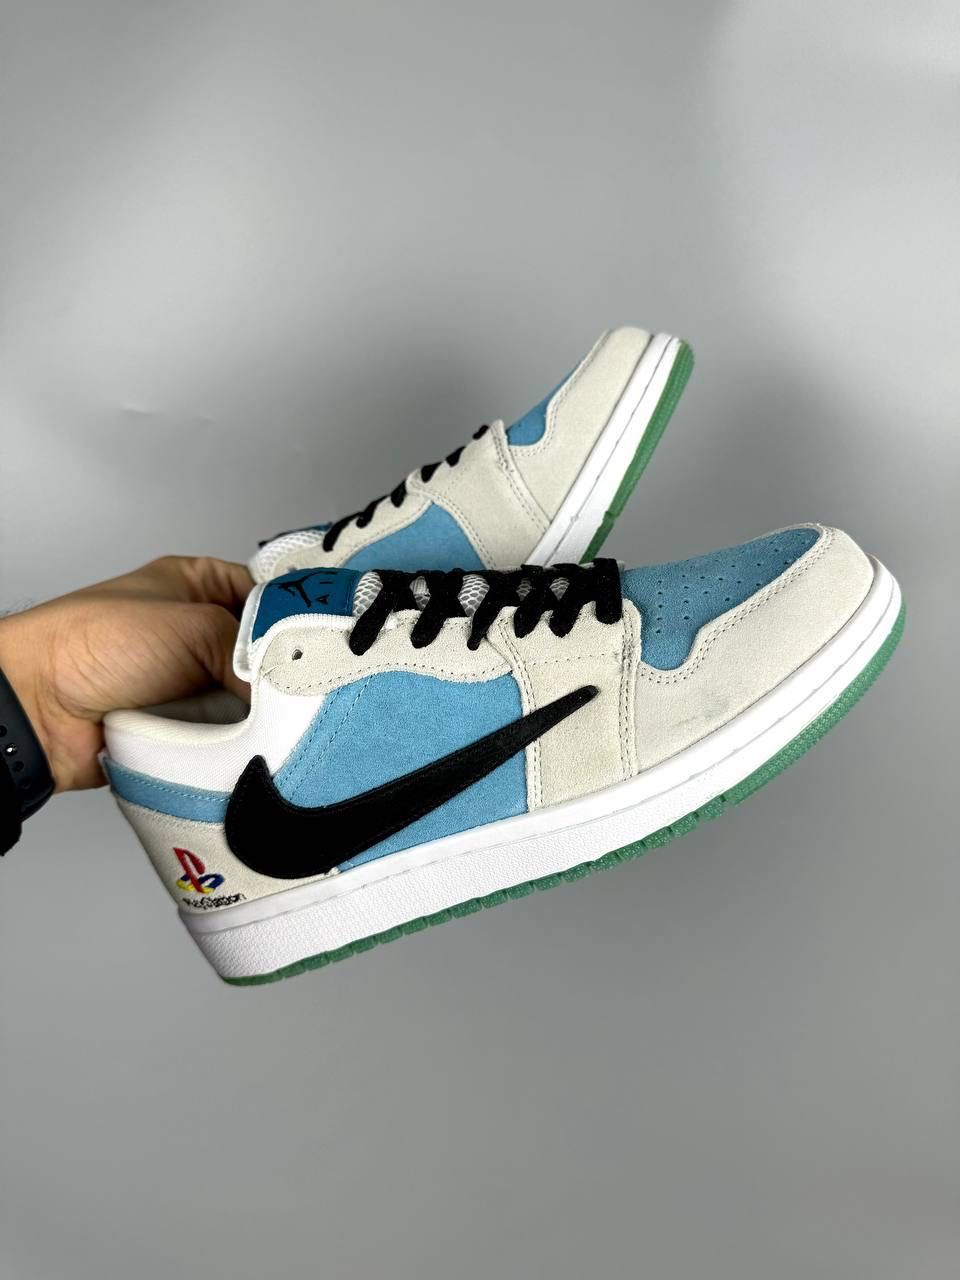 Кросівки Nike Air Jordan, кросовки Найк Аір Джордан бежево - голубі